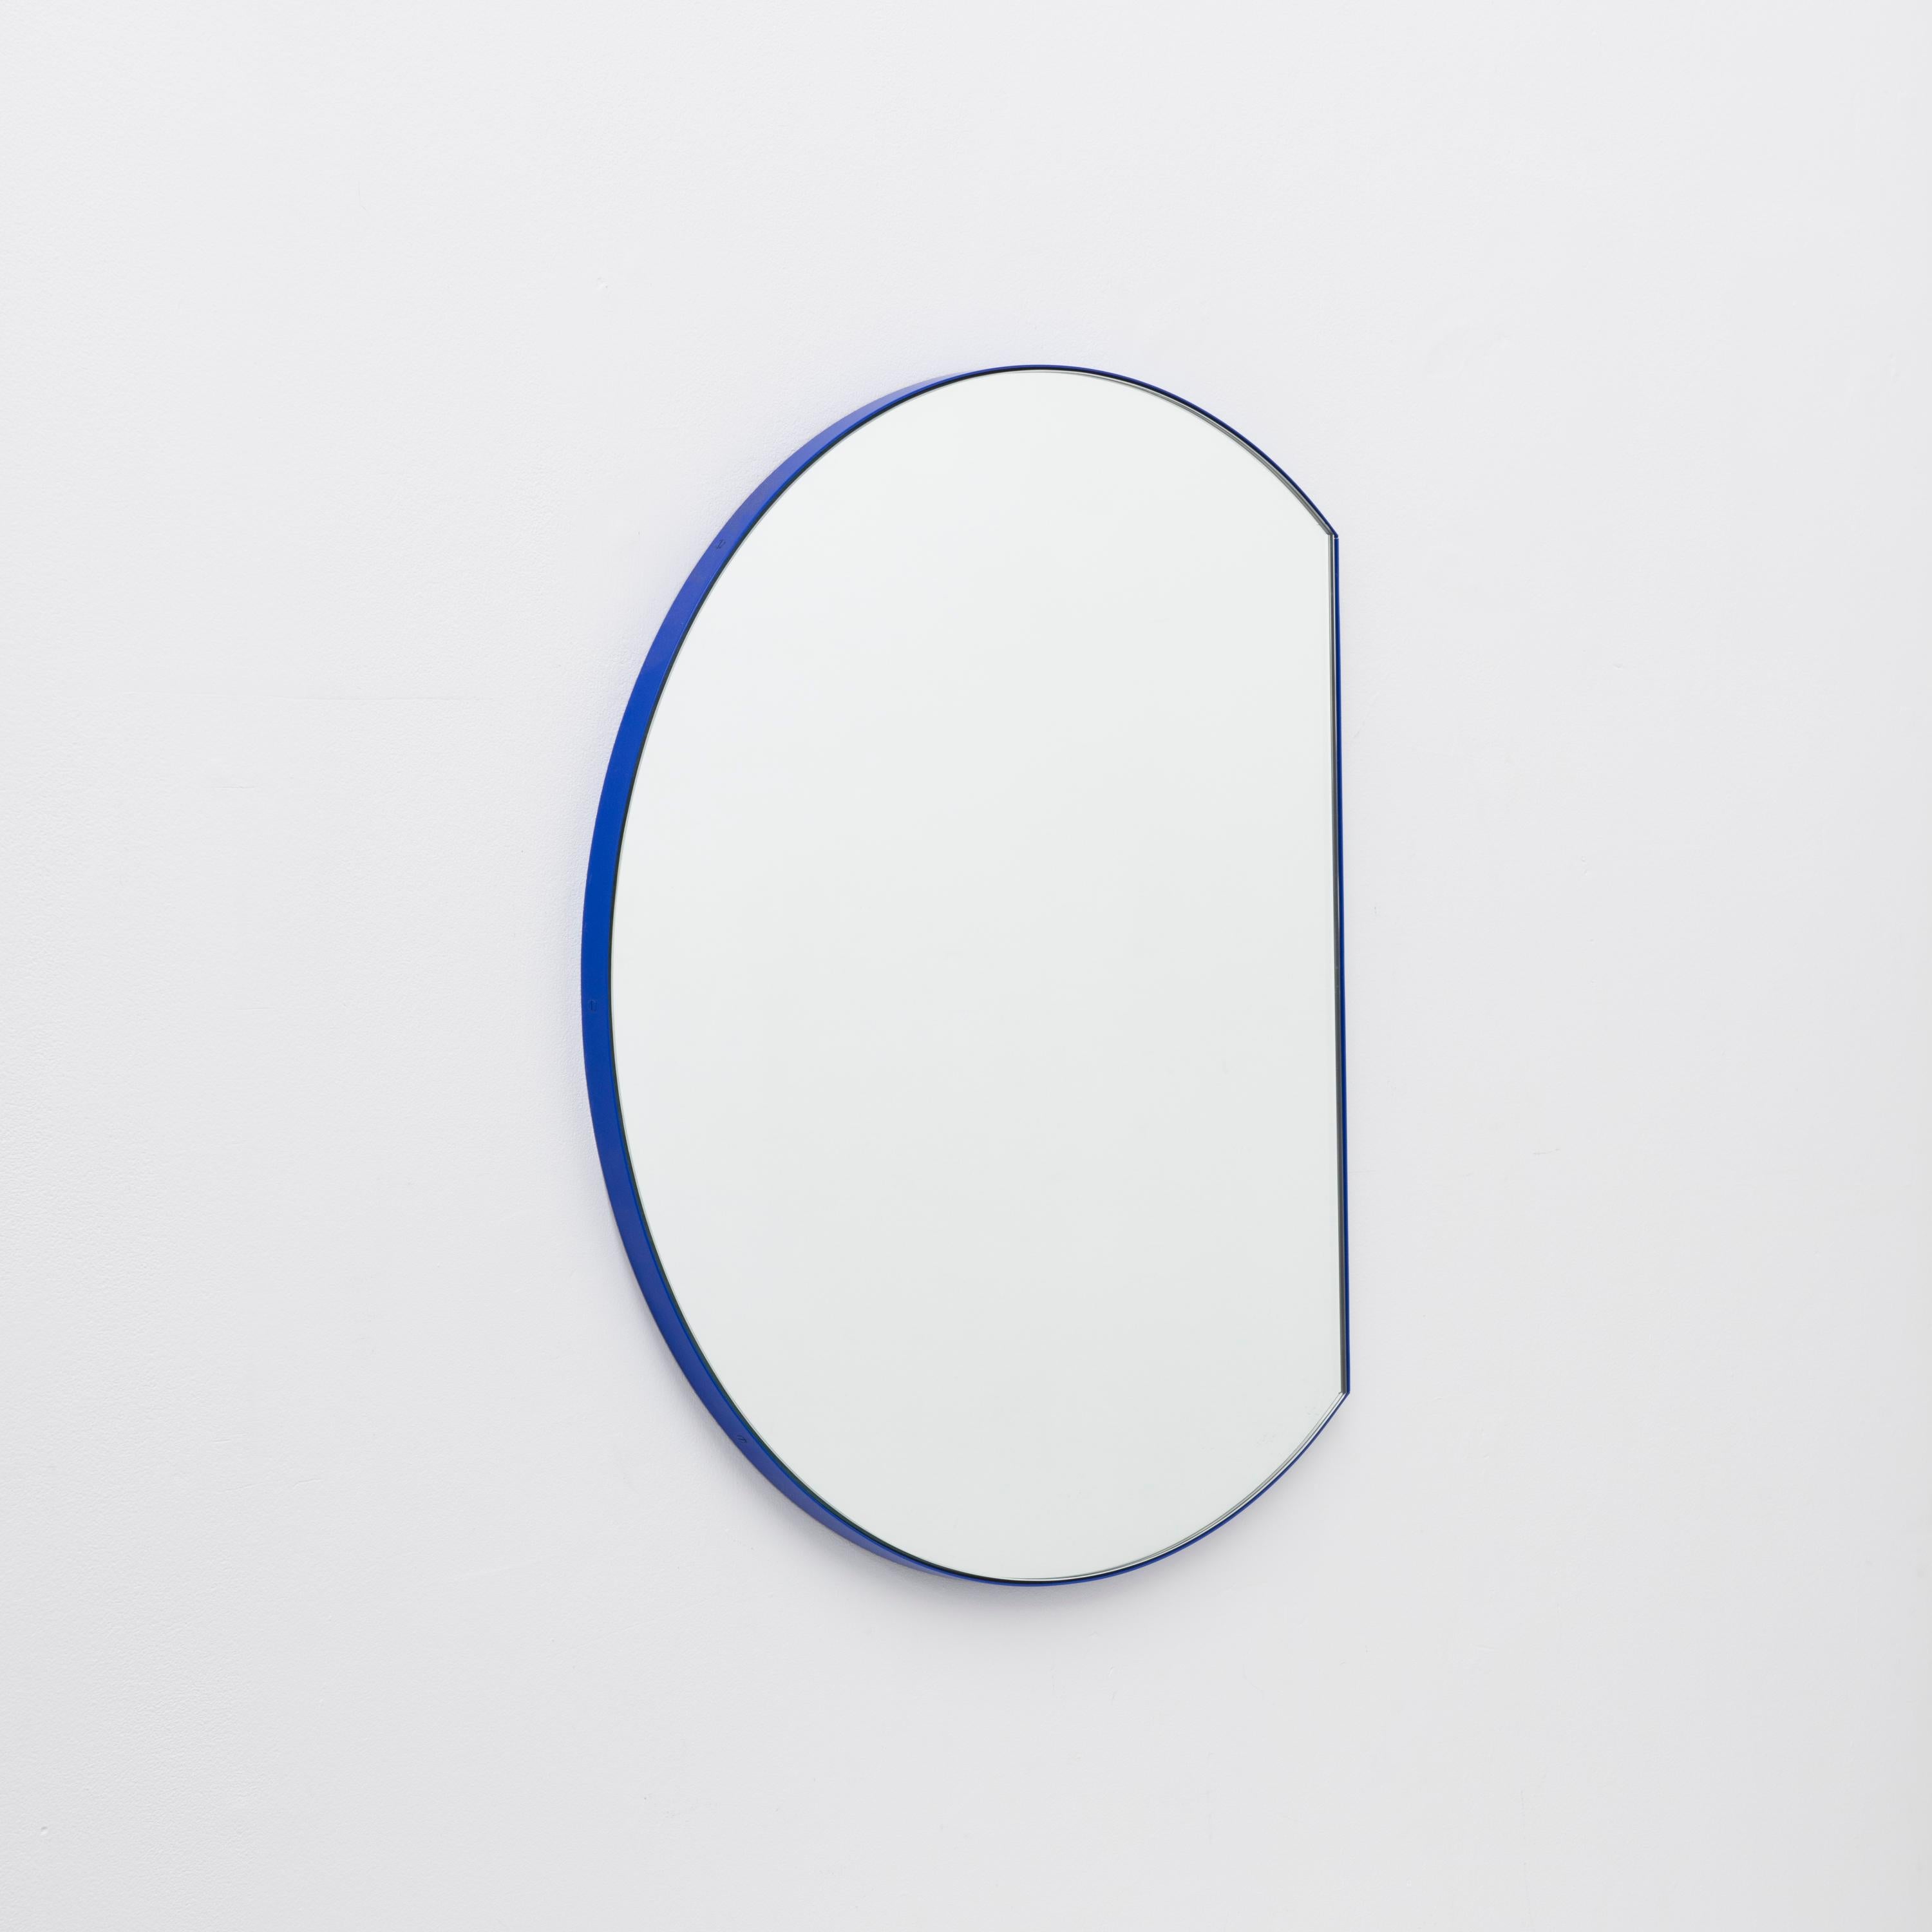 British Orbis Trecus Cropped Round Modern Mirror with Blue Frame, Medium For Sale